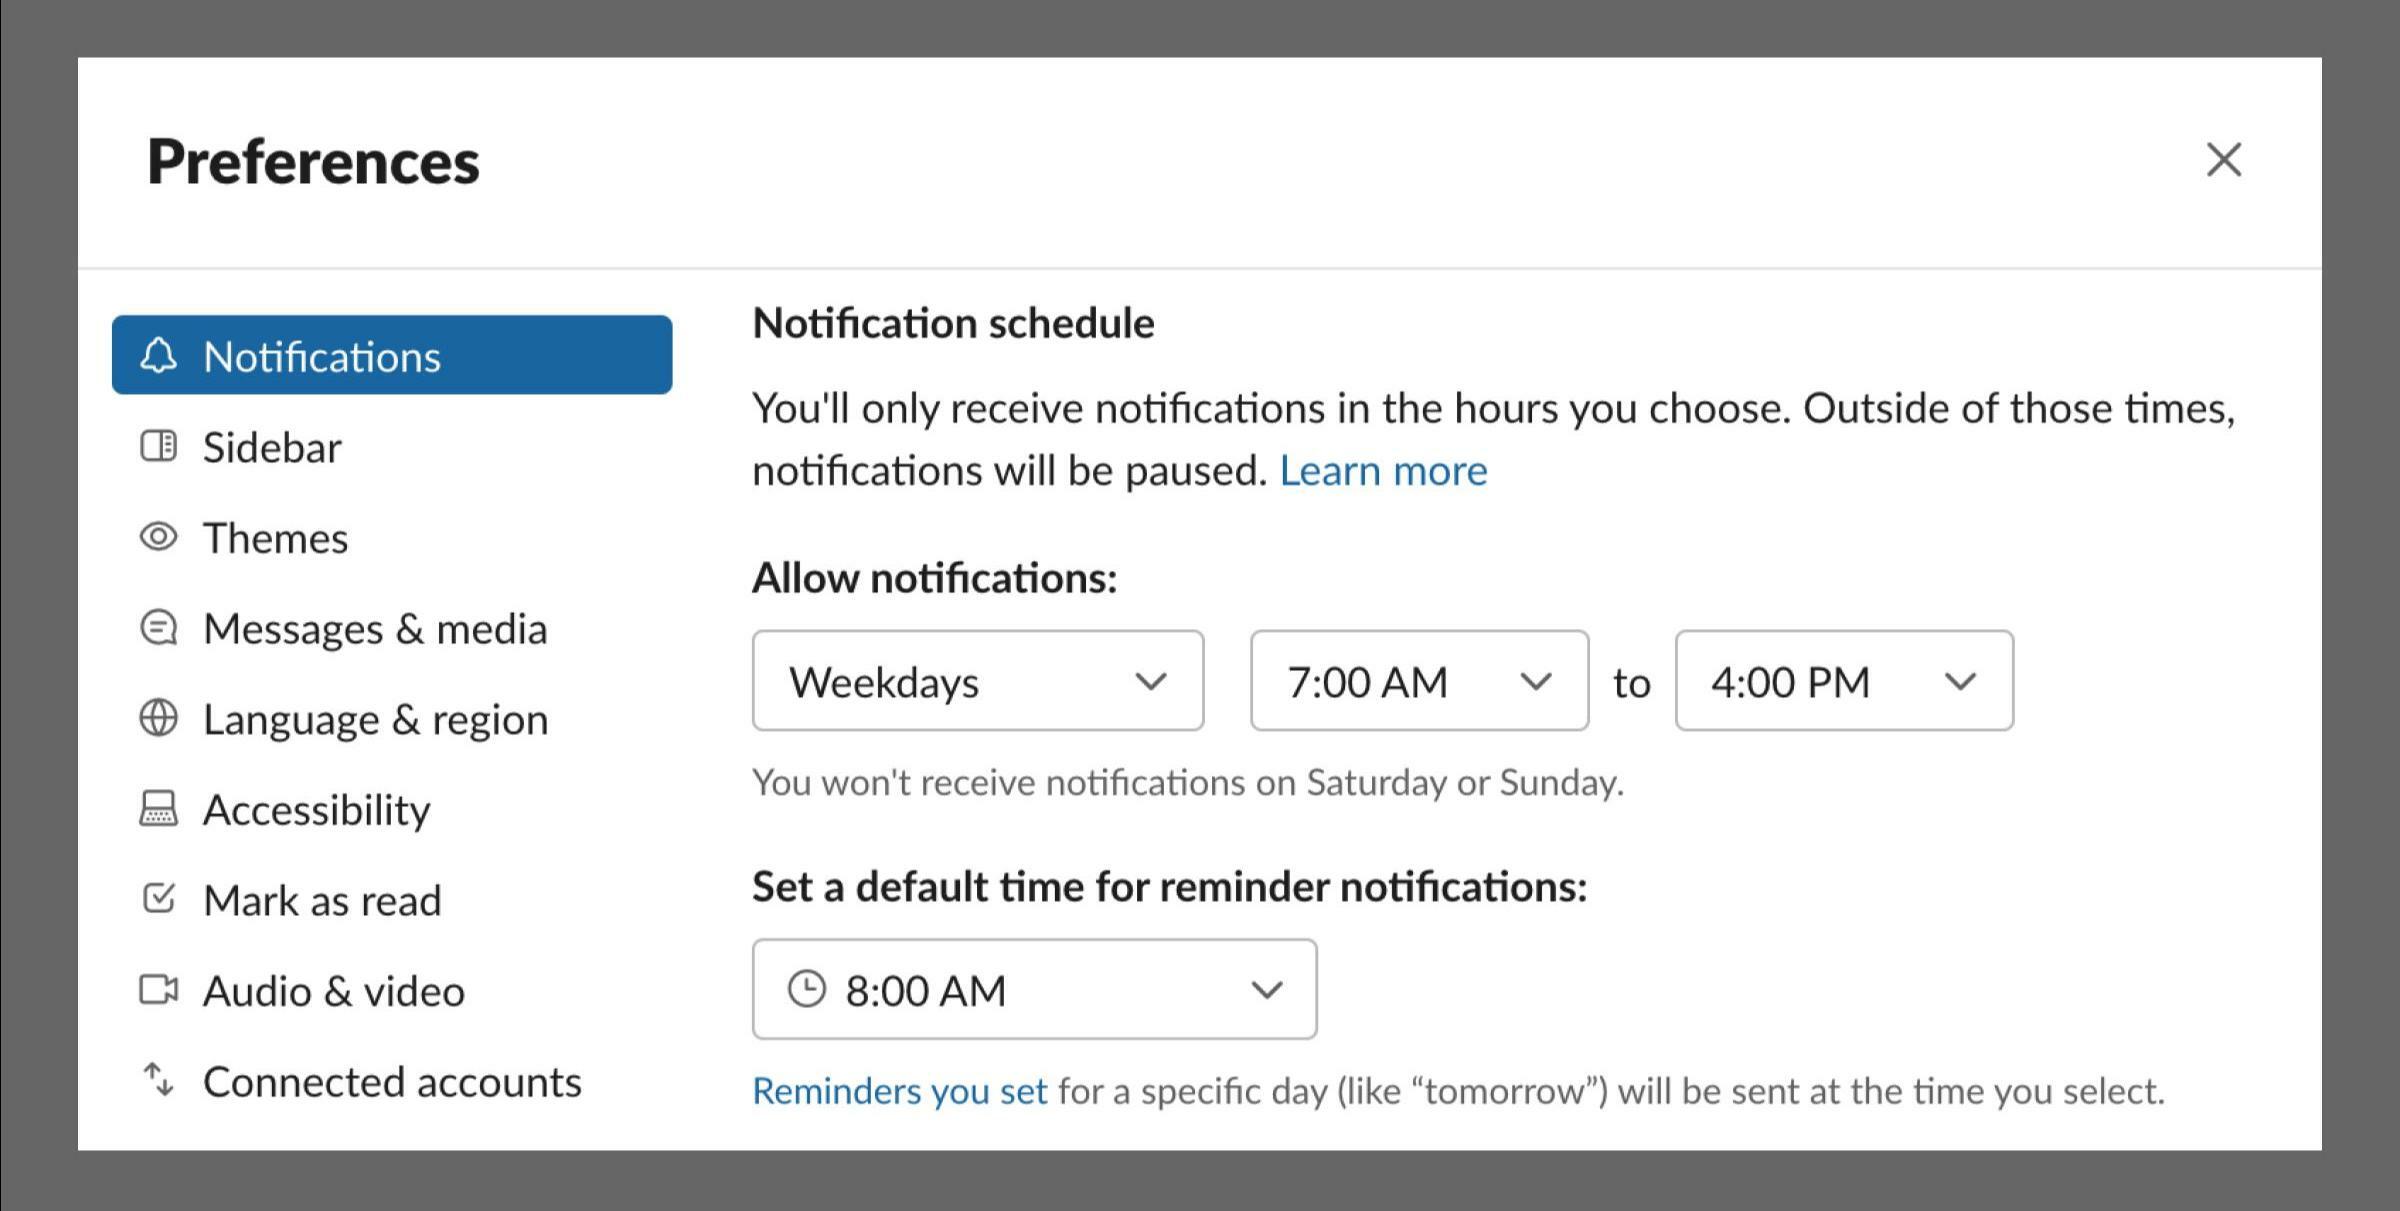 Opciones de notificación de Slack en el panel de preferencias para silenciar automáticamente las notificaciones durante ciertas horas del día